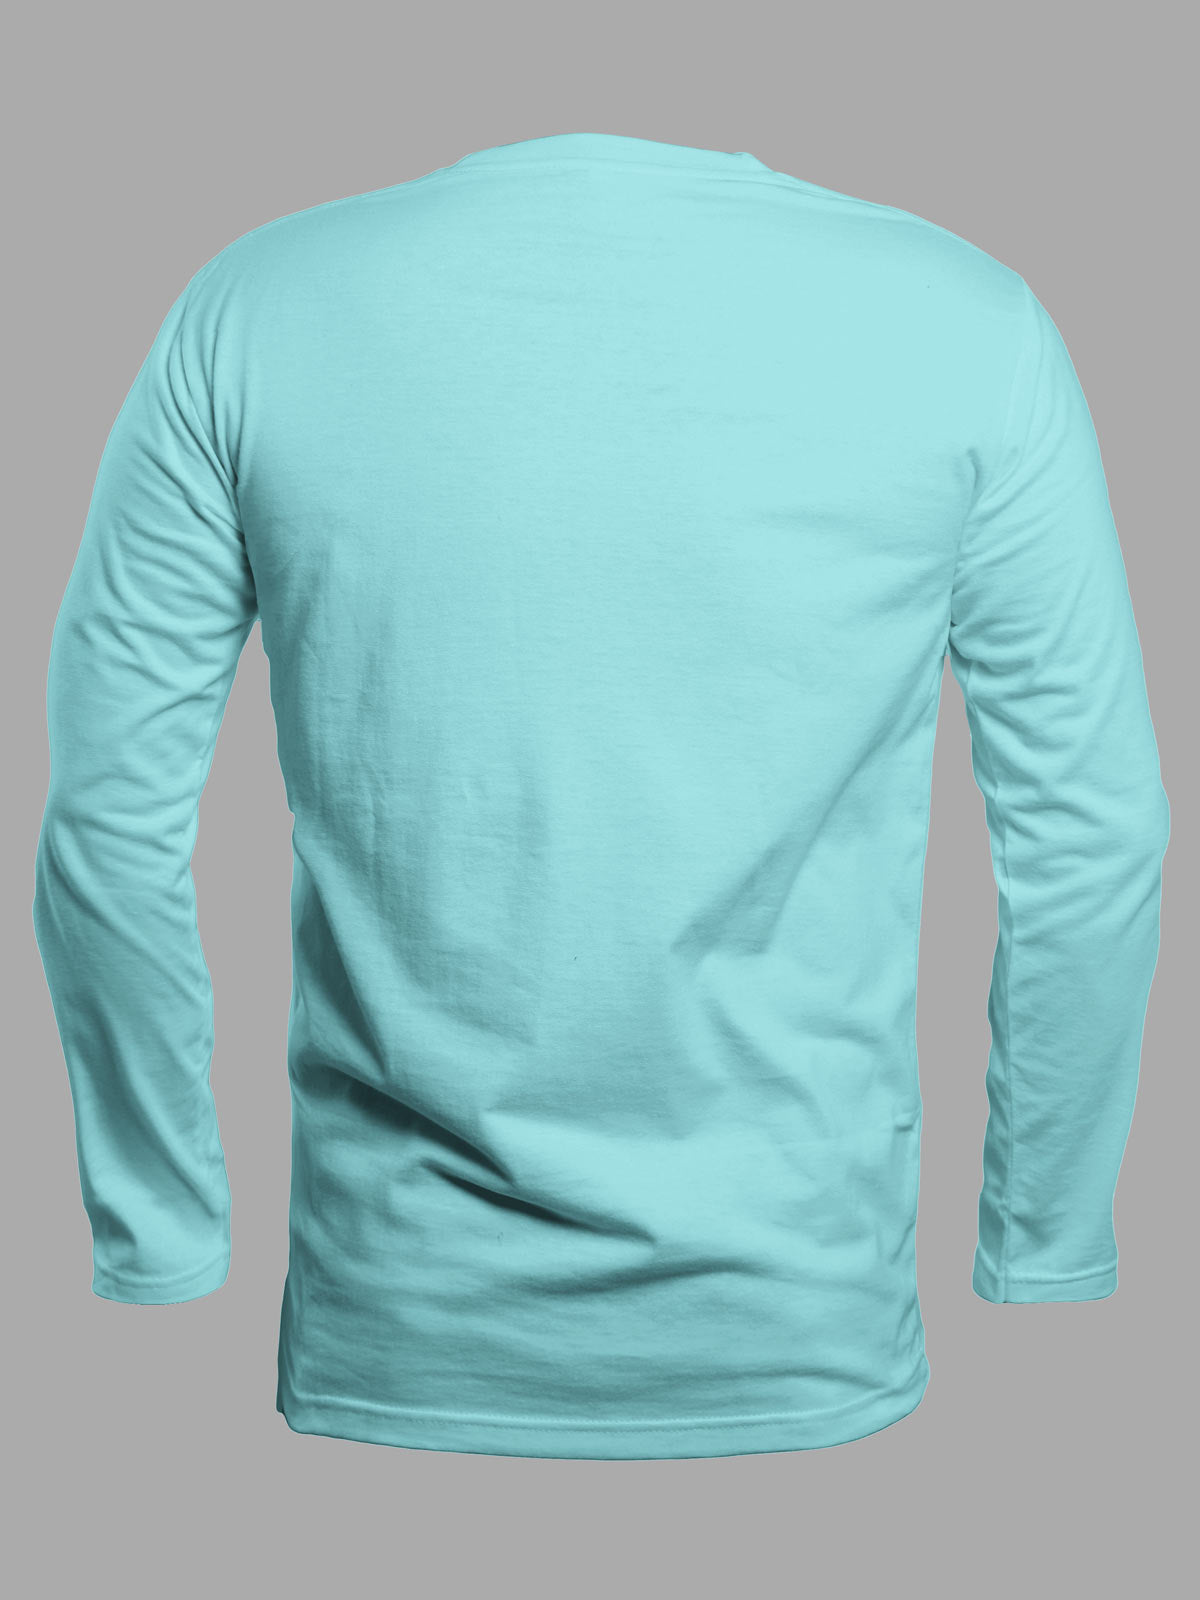 Blue-full-sleeves-t-shirt